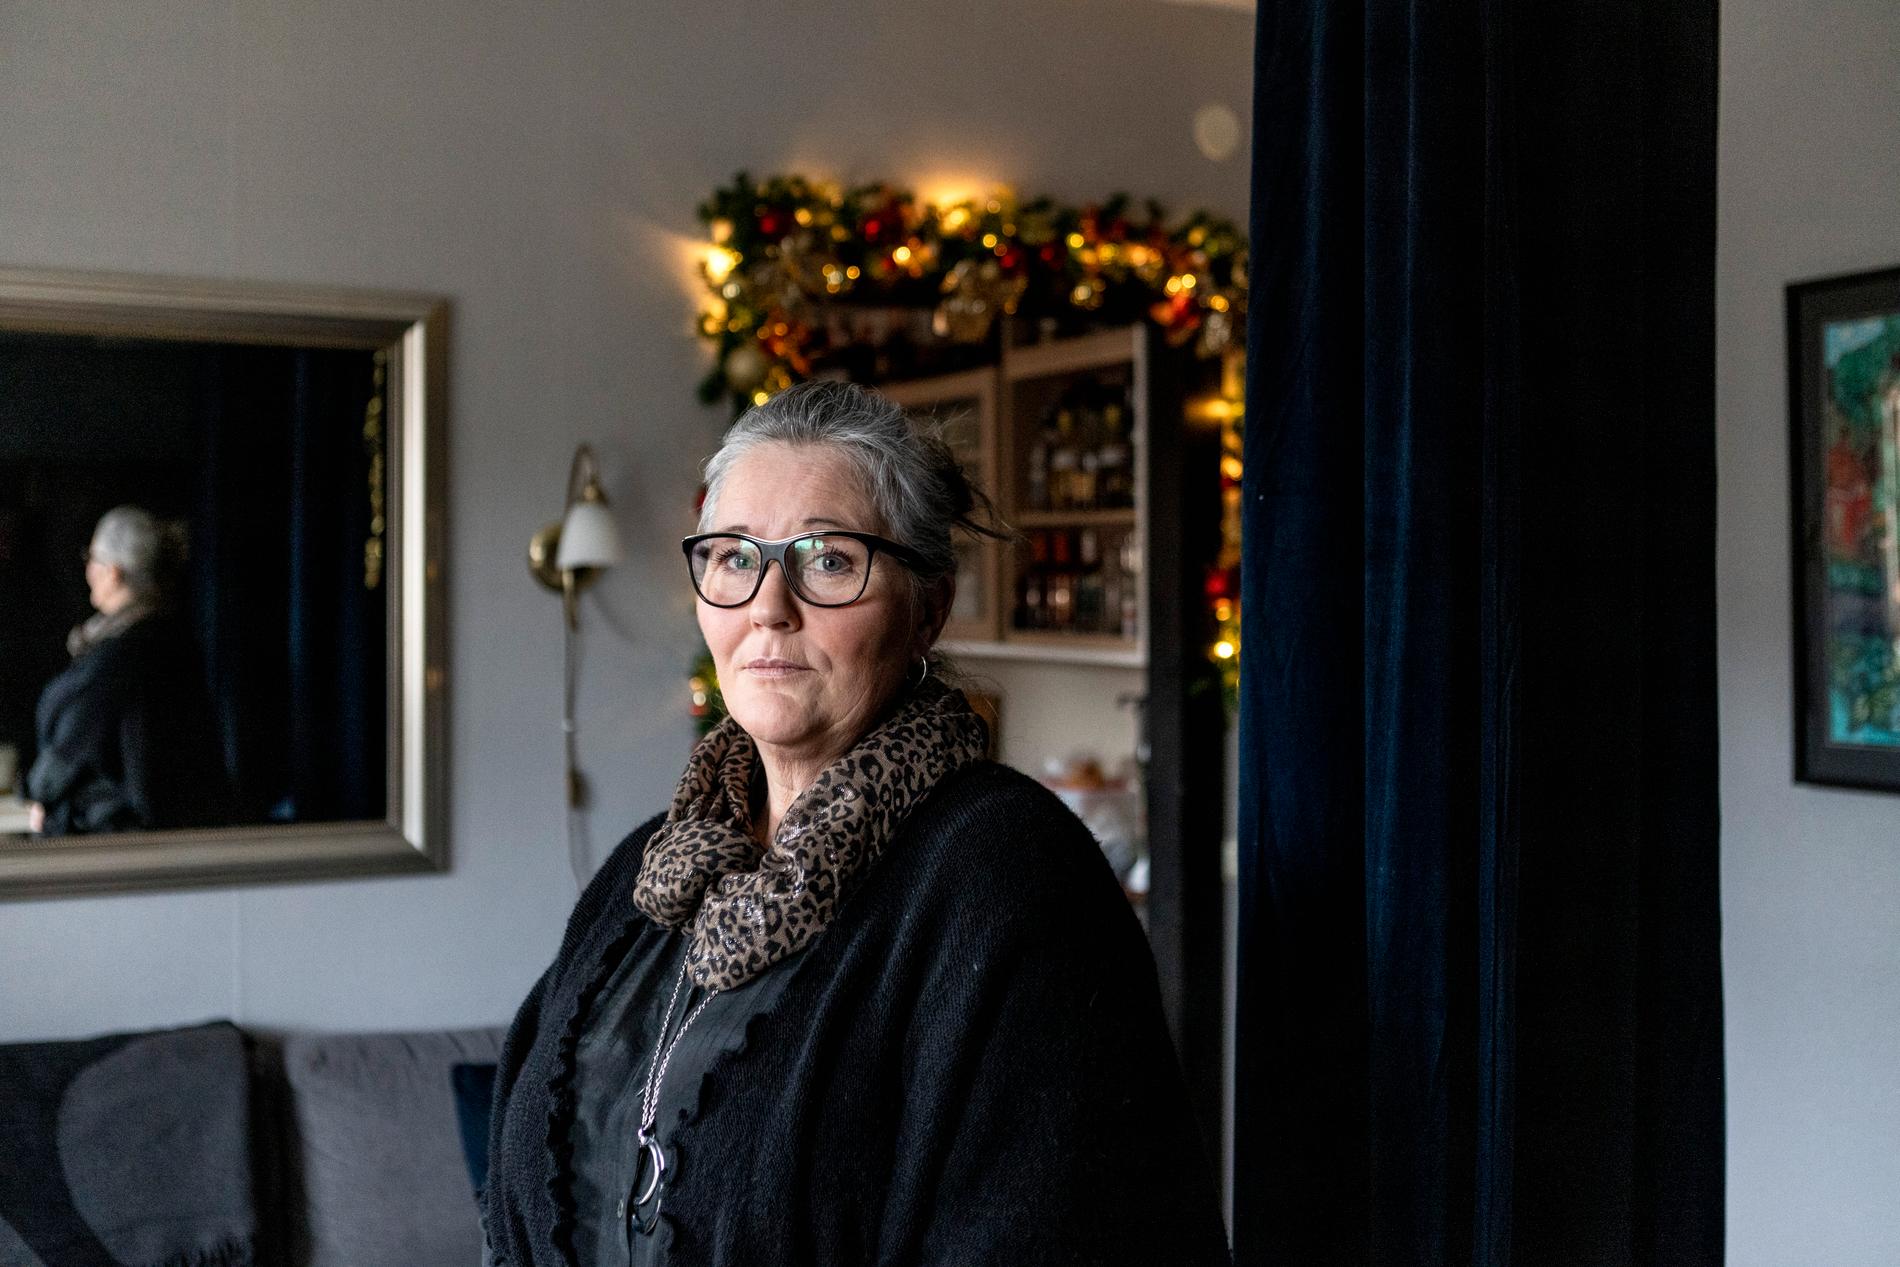 Carina Lövgren i sitt hem i Stockholm. Det är här hon föredrar att tillbringa sin tid – Sundsvall undviker hon så mycket hon kan.